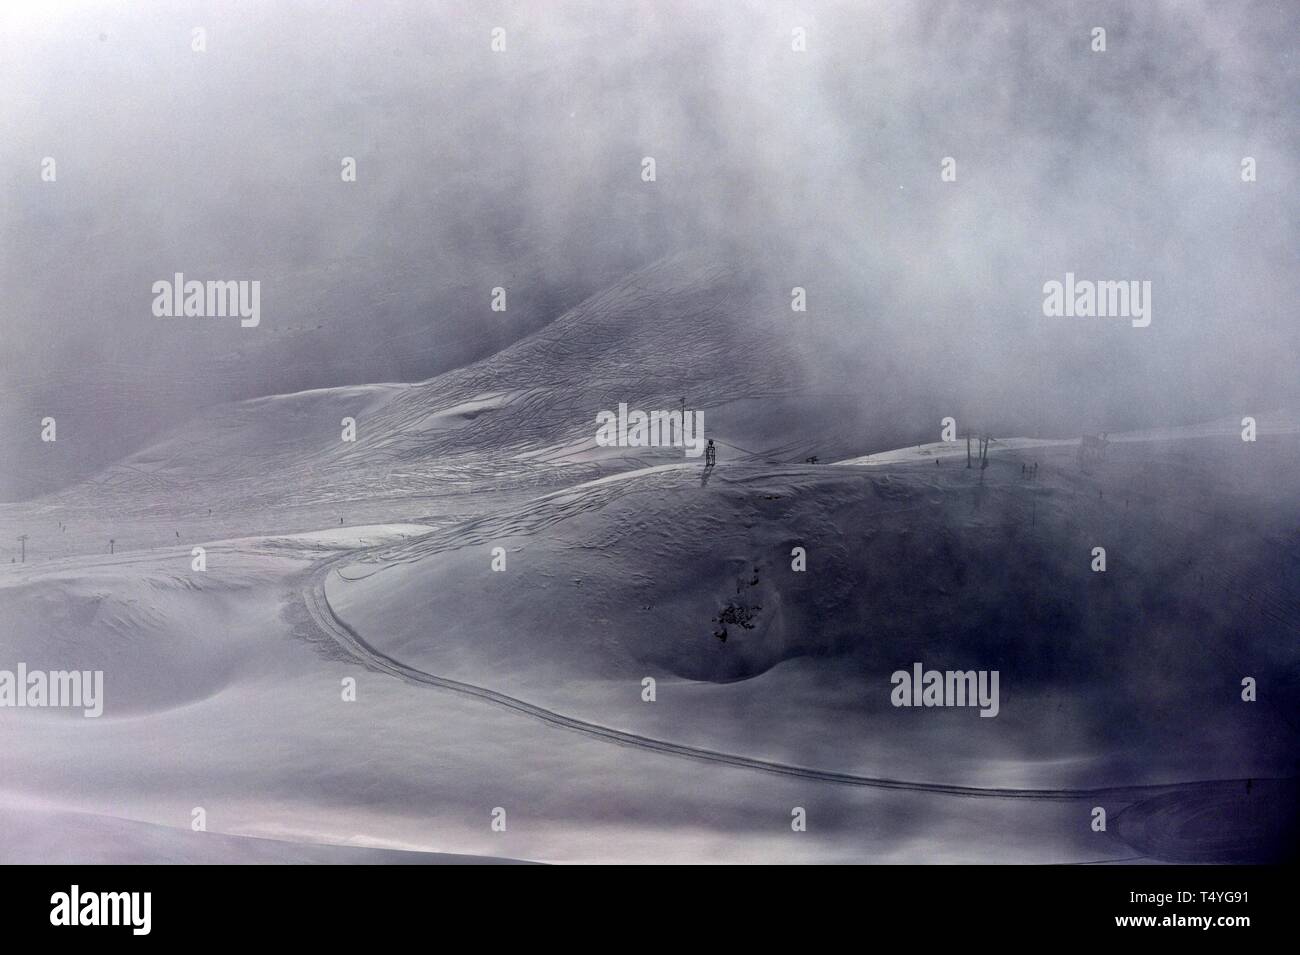 Zugspitze: Im Nebel erkennt man die Stützen eines lifts und schemenhaft ein paar Skiläufer. Foto Stock